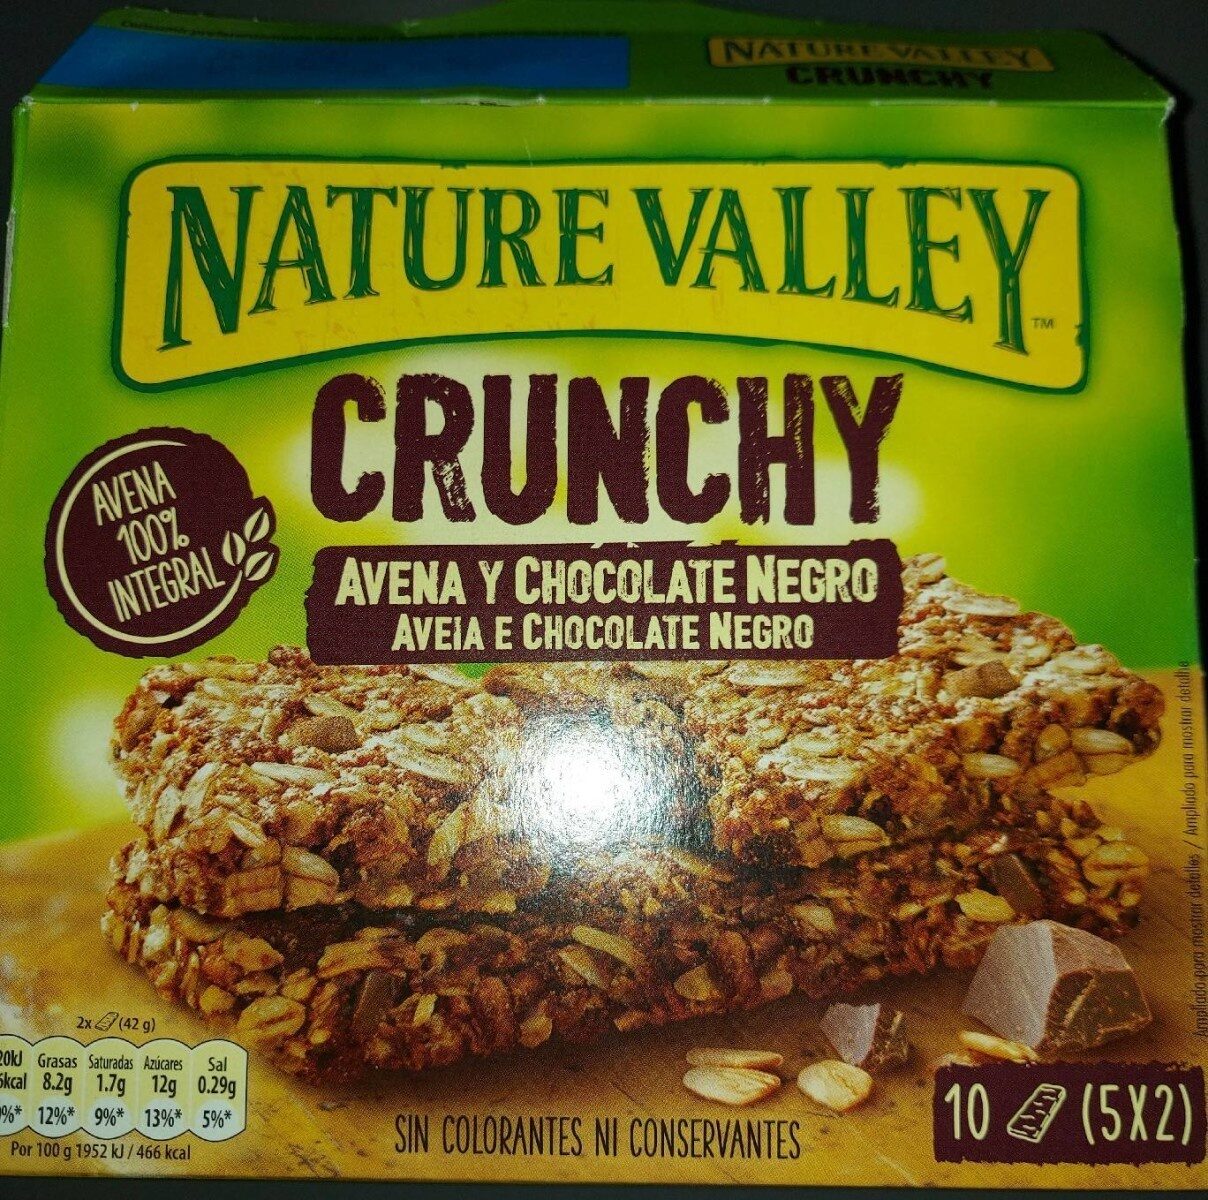 Crunchy avena y chocolate negro - Producto - fr